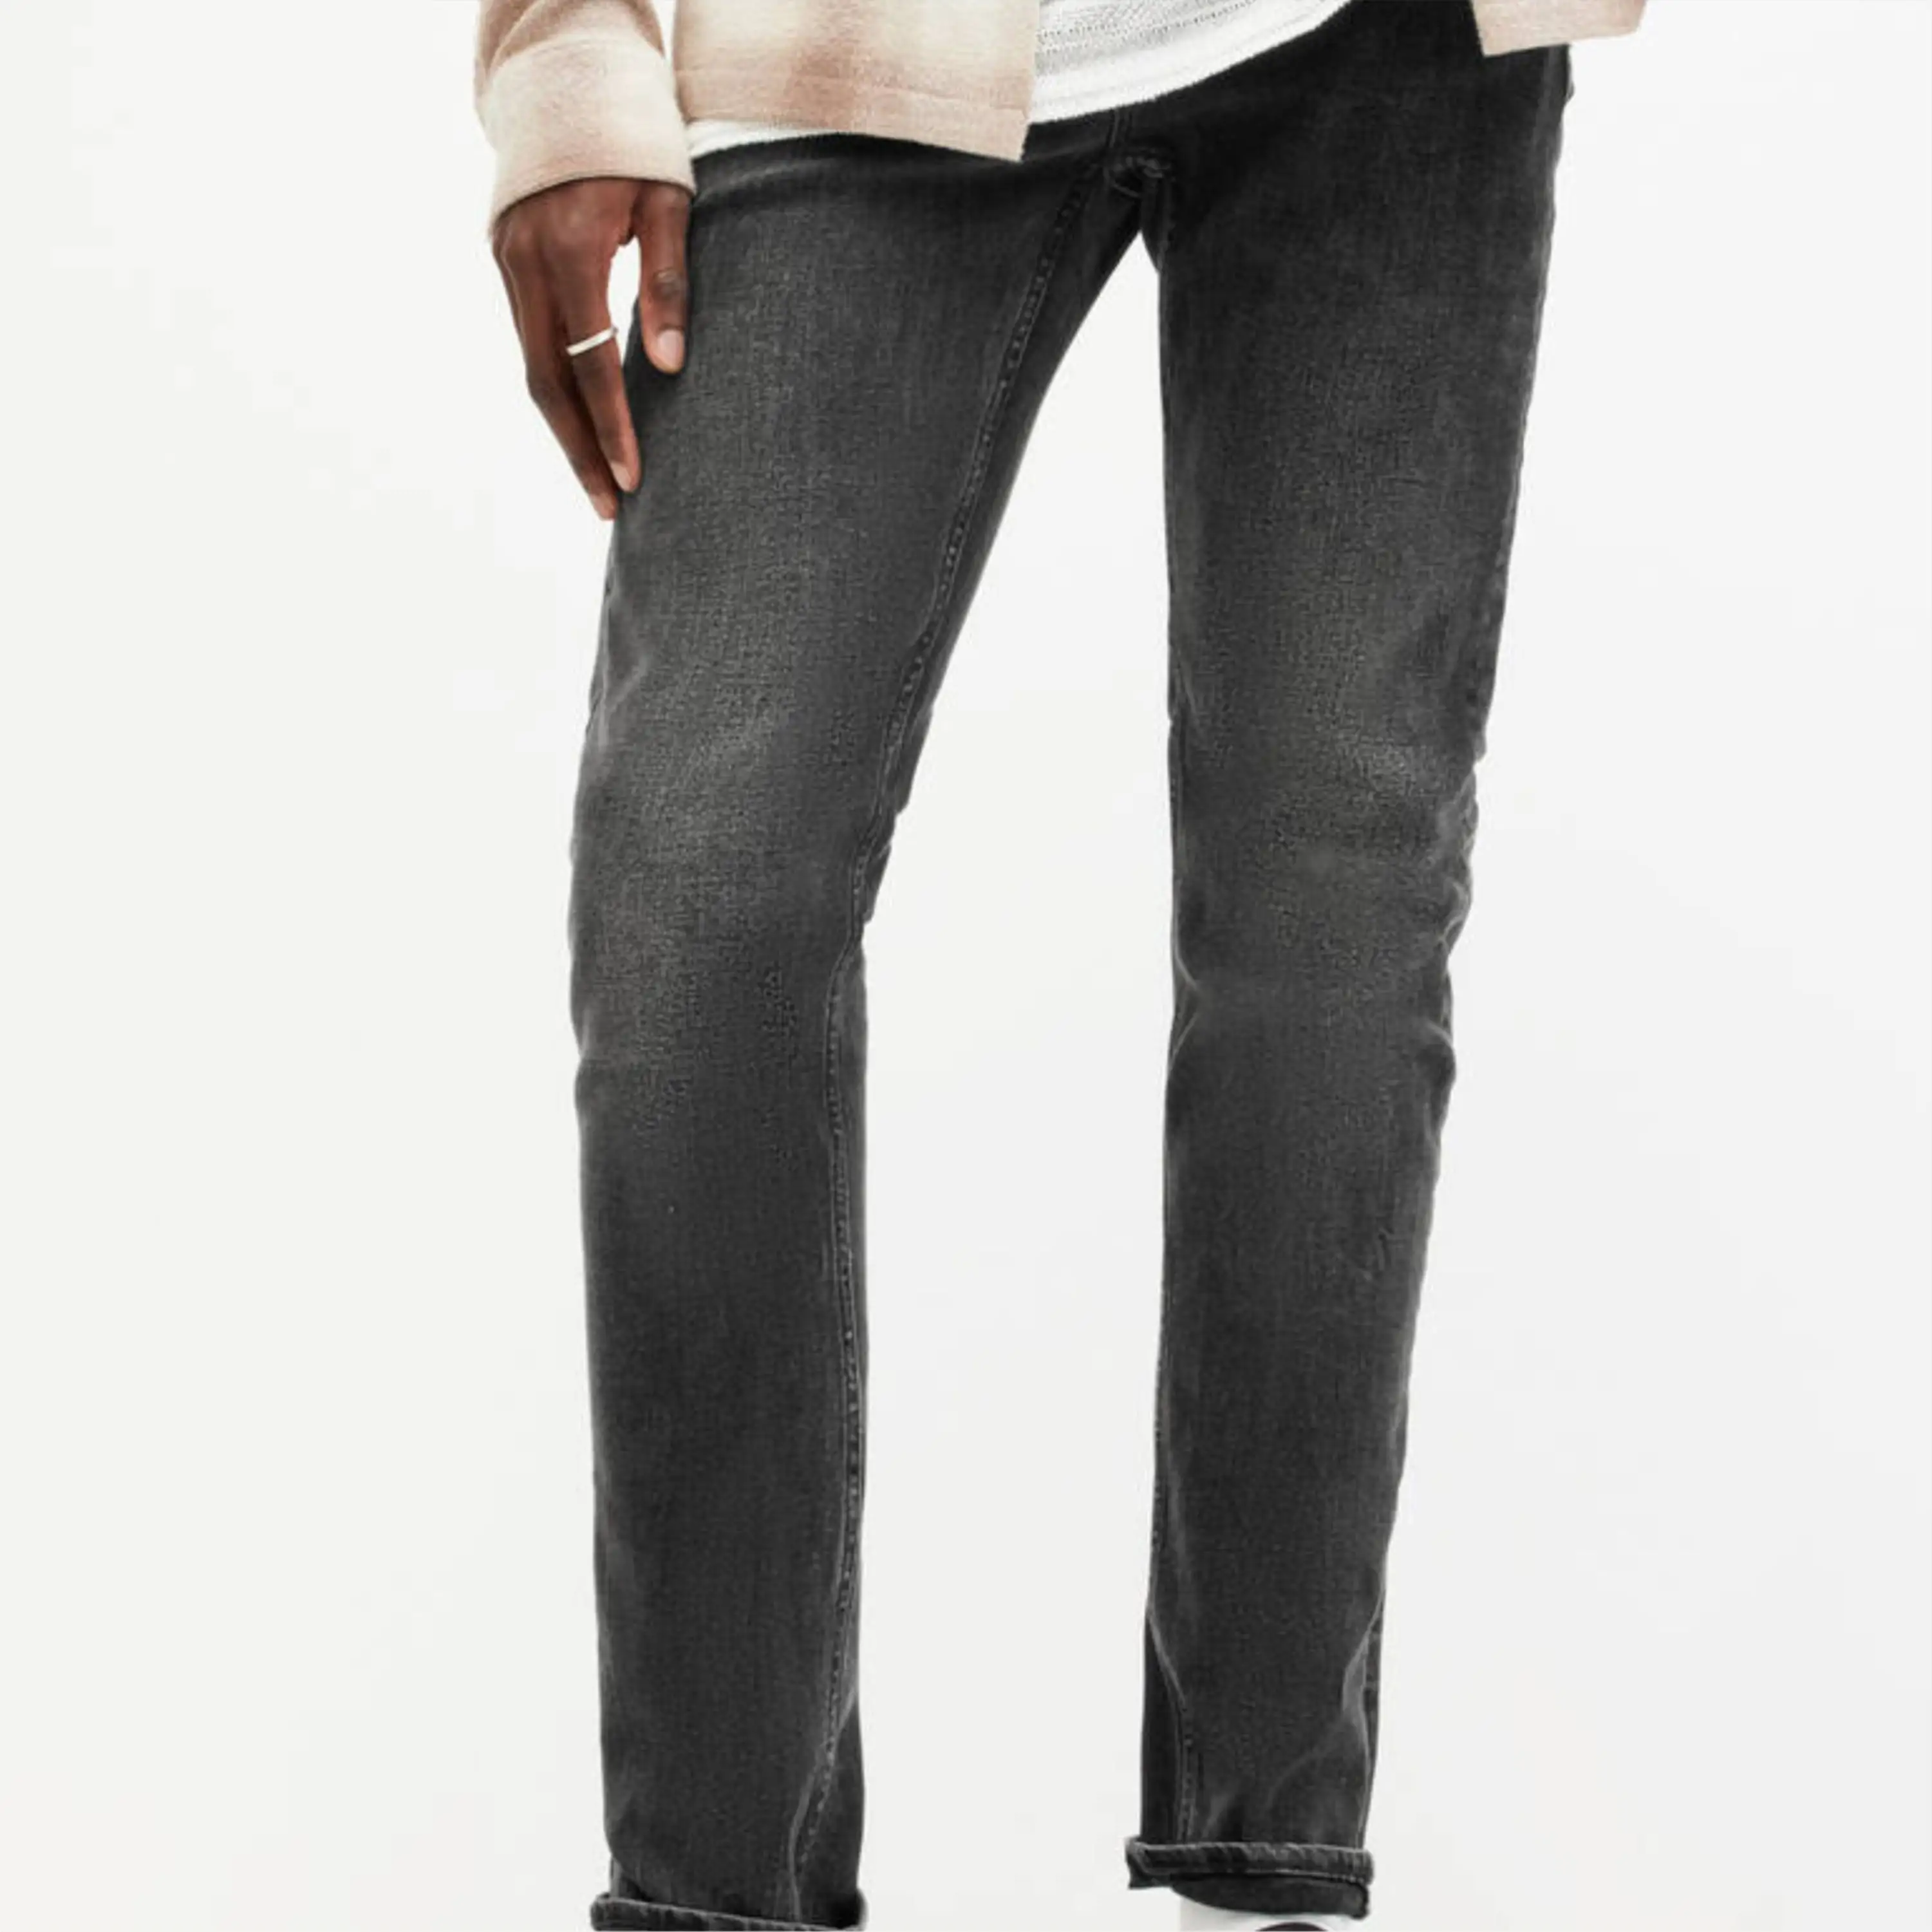 Obral celana Jeans pria melar tebal, tabung lurus longgar pinggang tinggi ukuran besar kasual